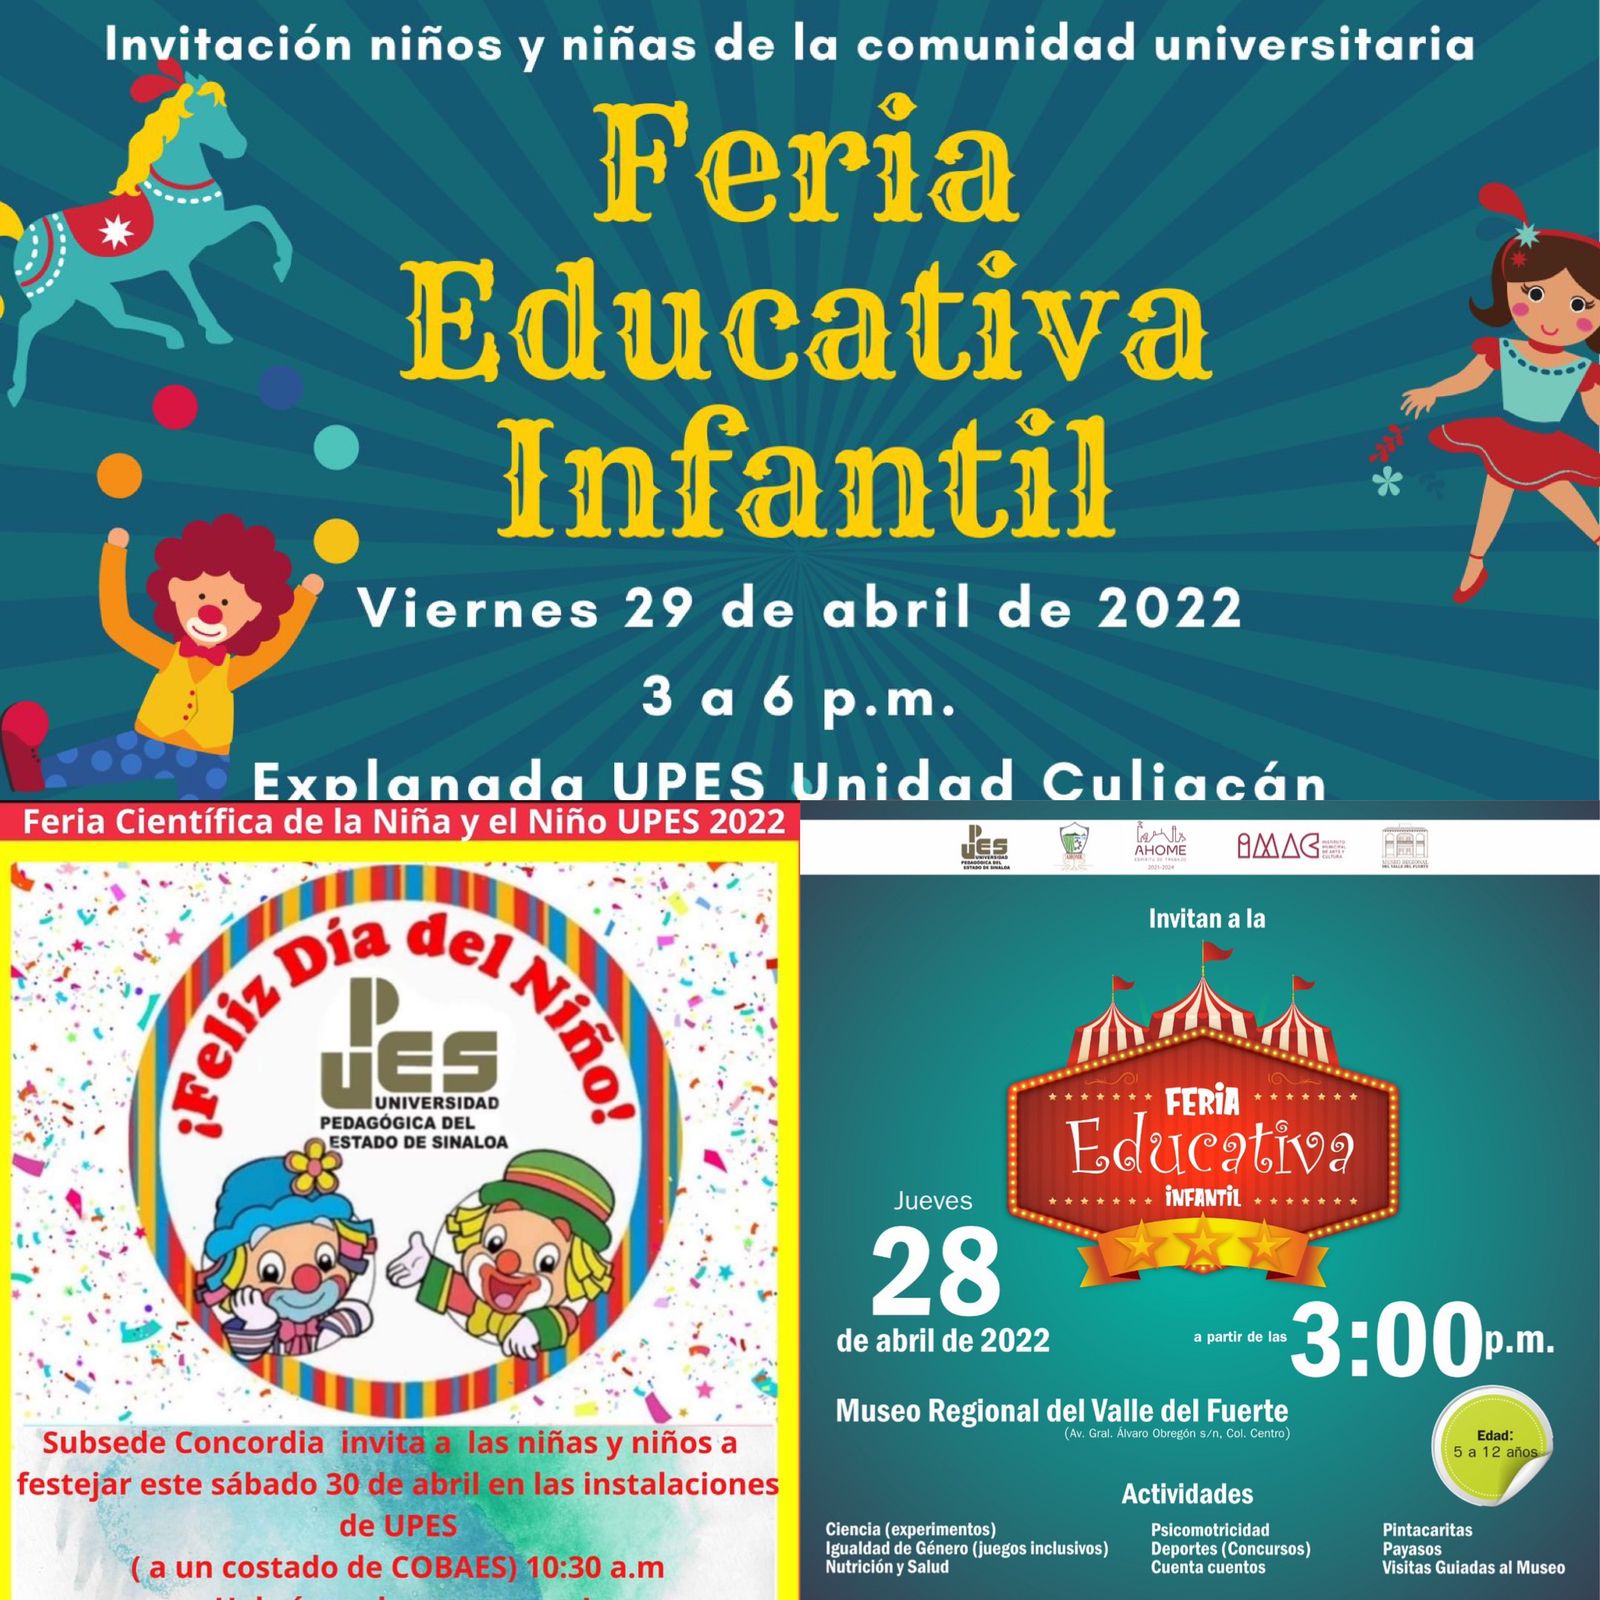 Upes tendrá Feria Educativa Infantil para celebrar a niñas y niños